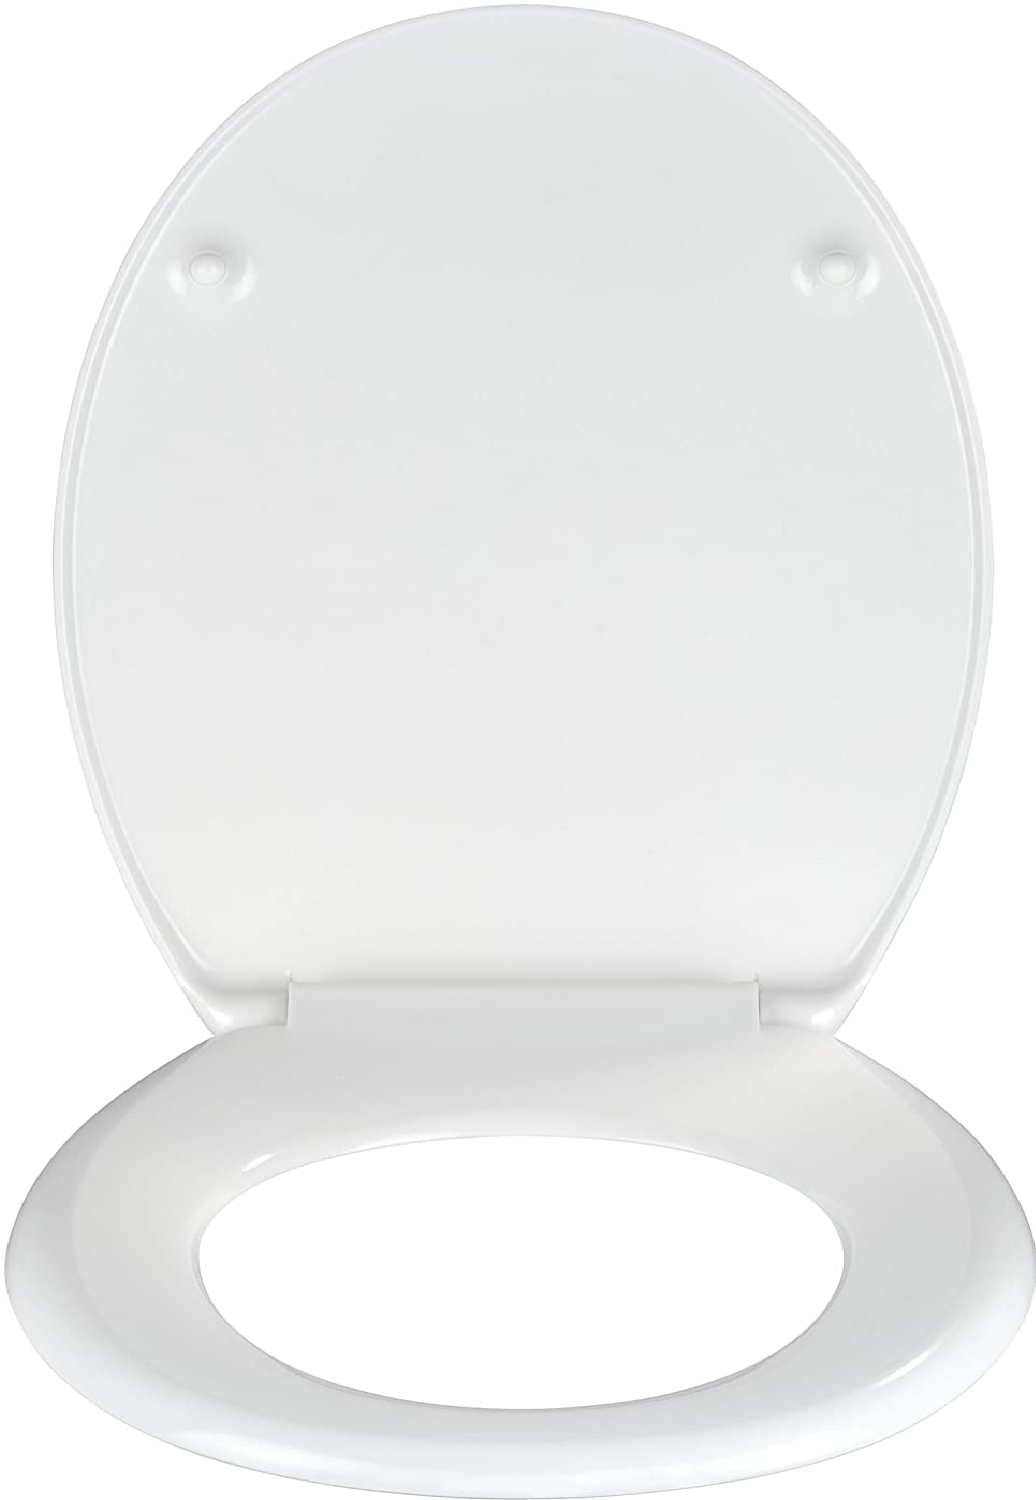 WC-Sitz Jump - Antibakterieller Toilettensitz, rostfreie Edelstahlbefestigung, Duroplast, 37.5 x 45 cm, Mehrfarbig